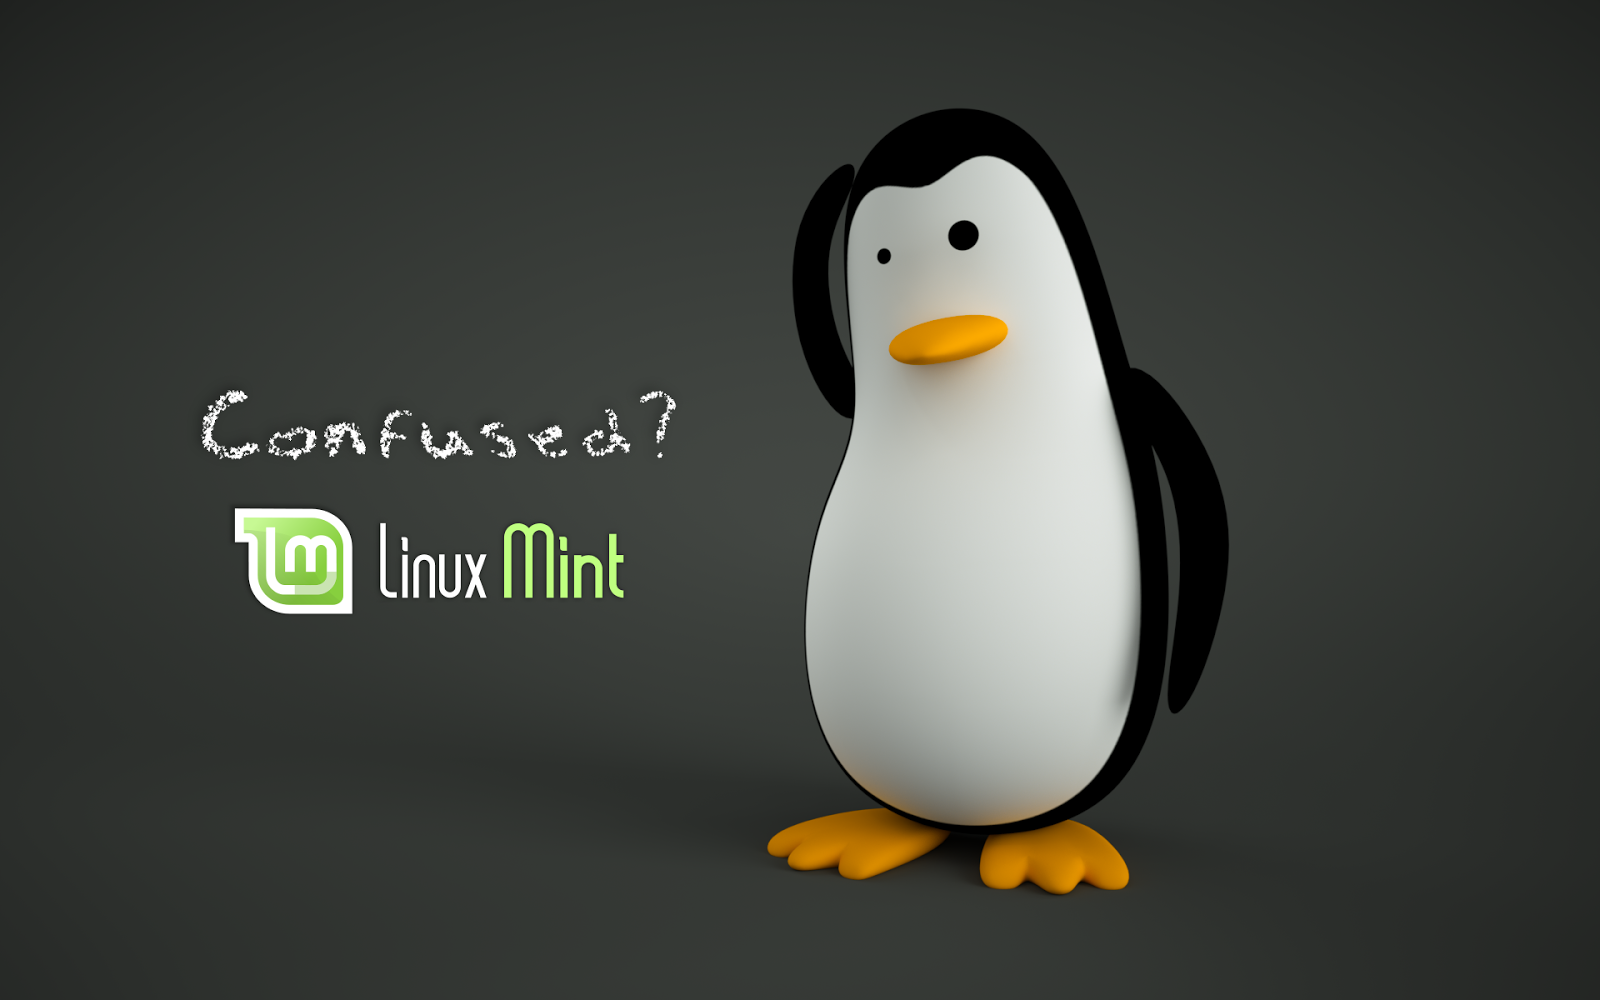 sfondi linux mint,uccello incapace di volare,pinguino,uccello,cartone animato,animazione